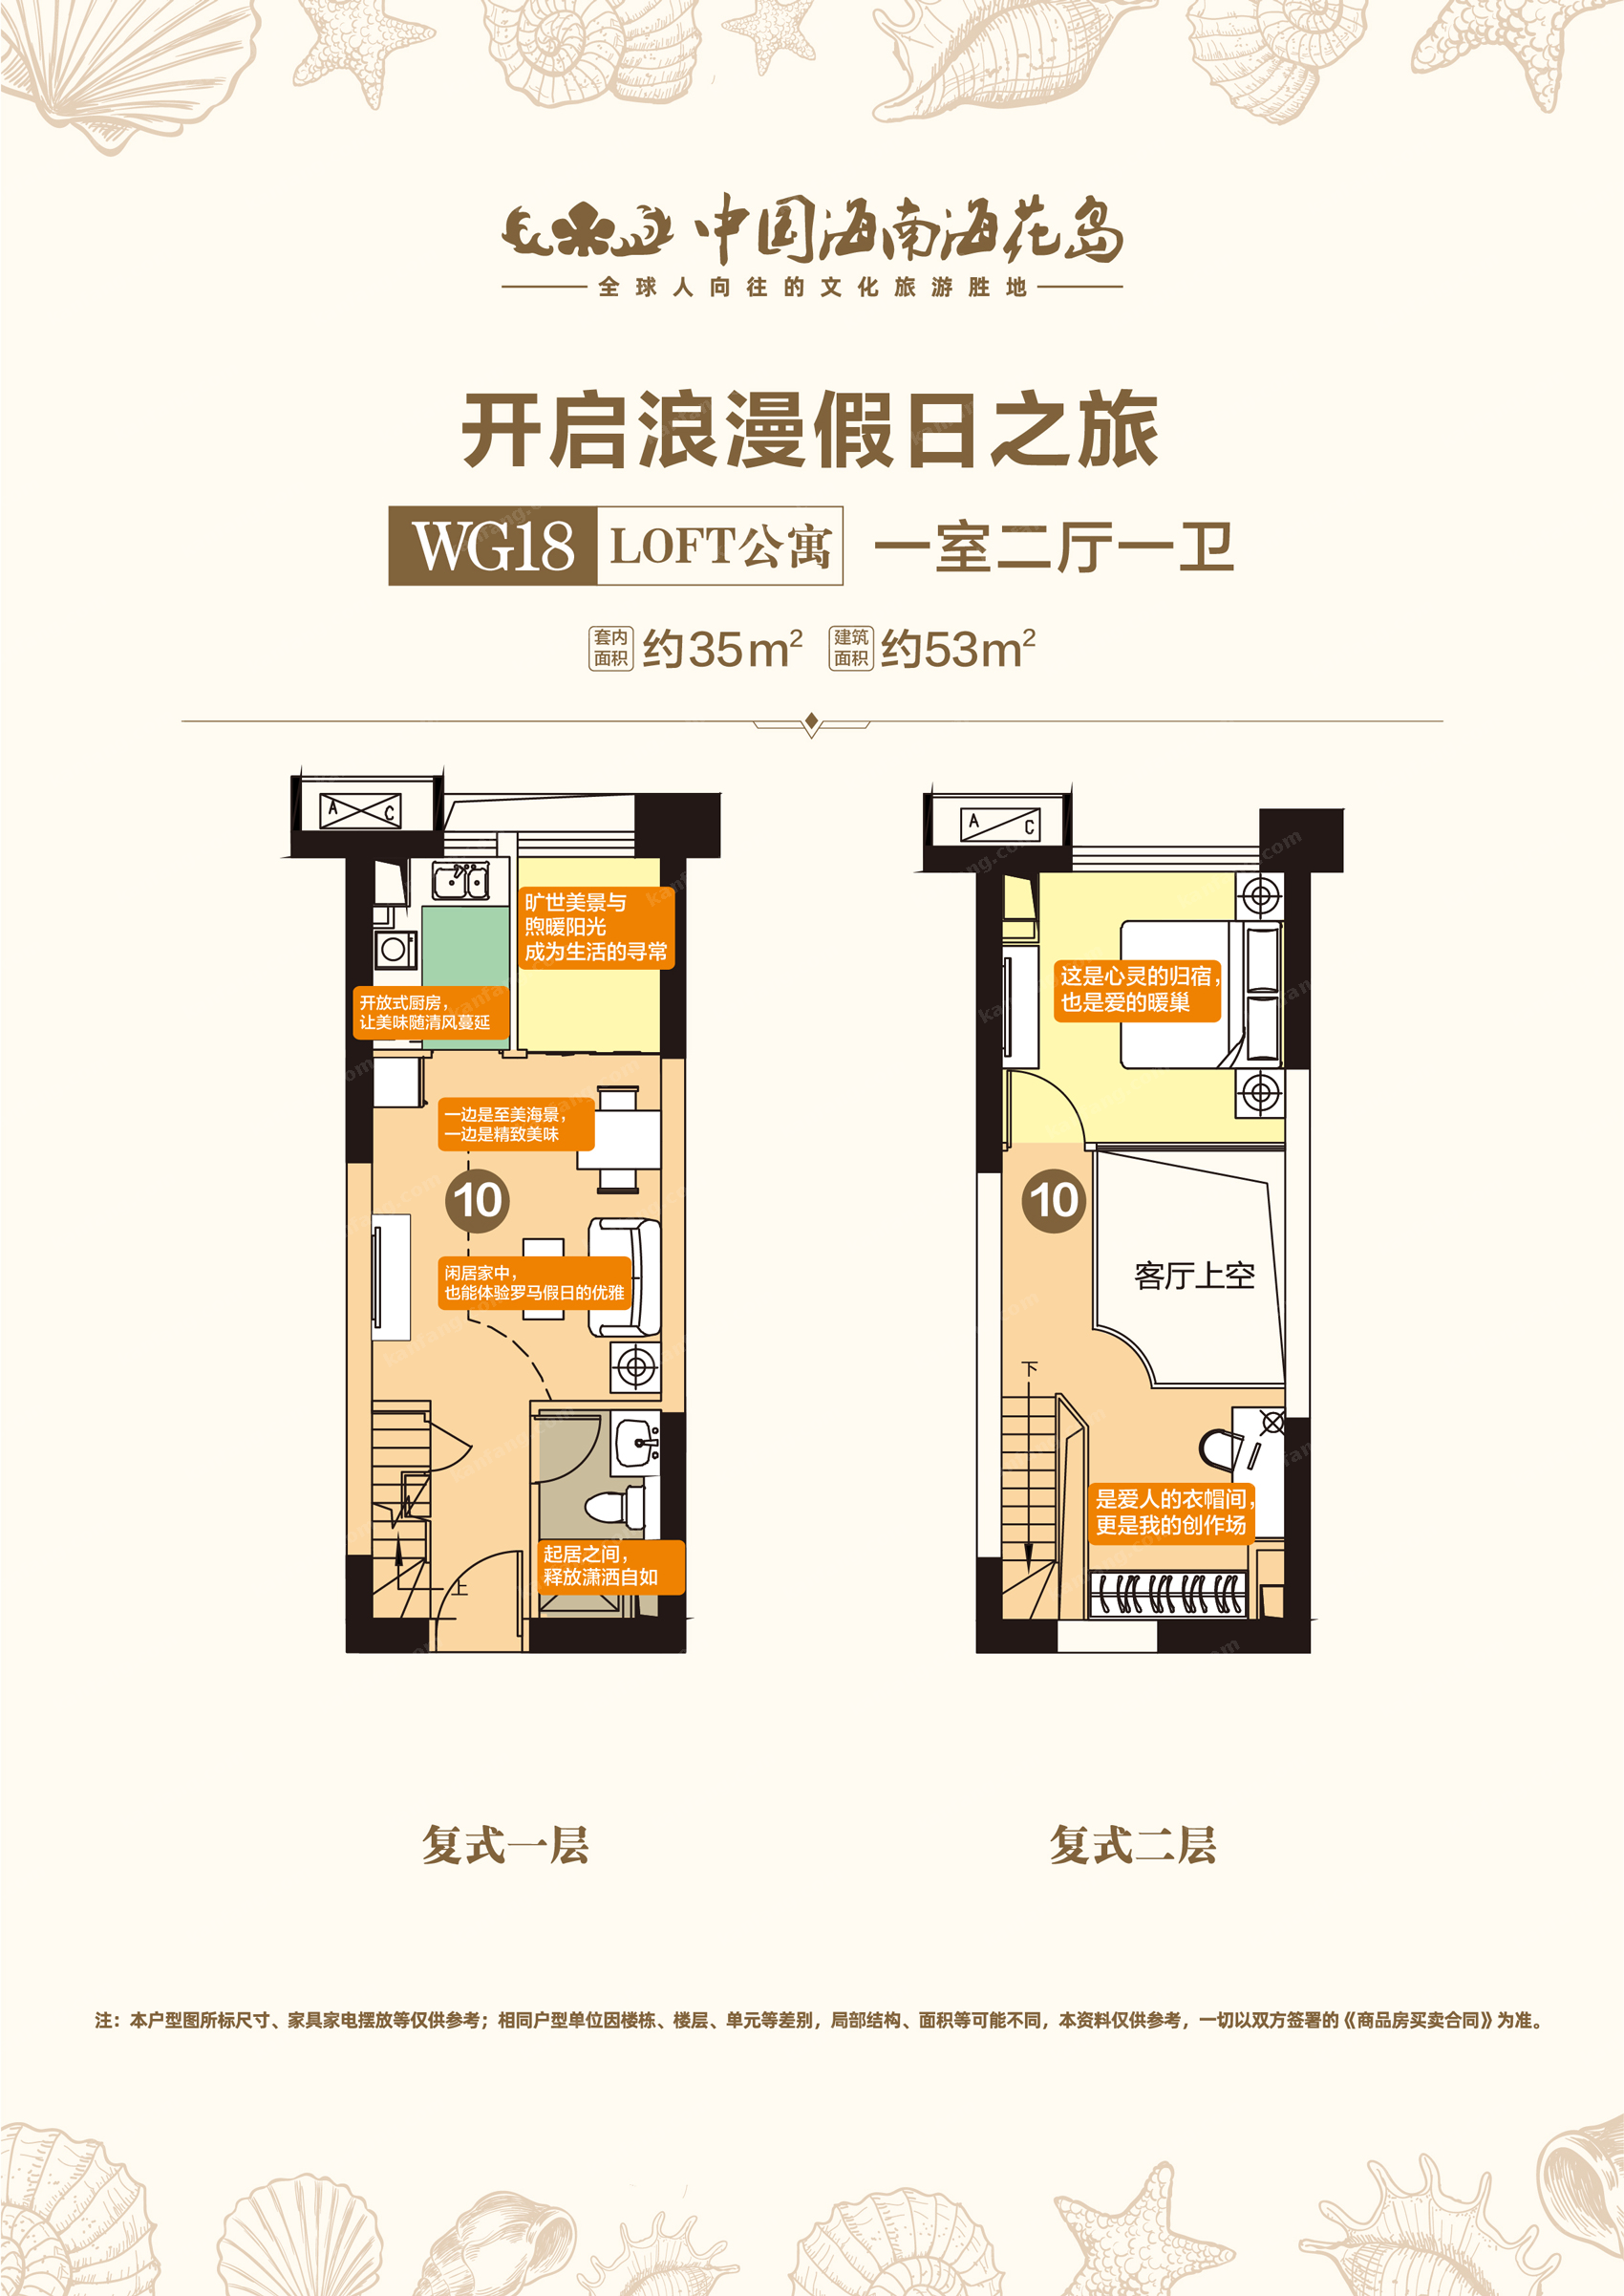 WG18loft公寓